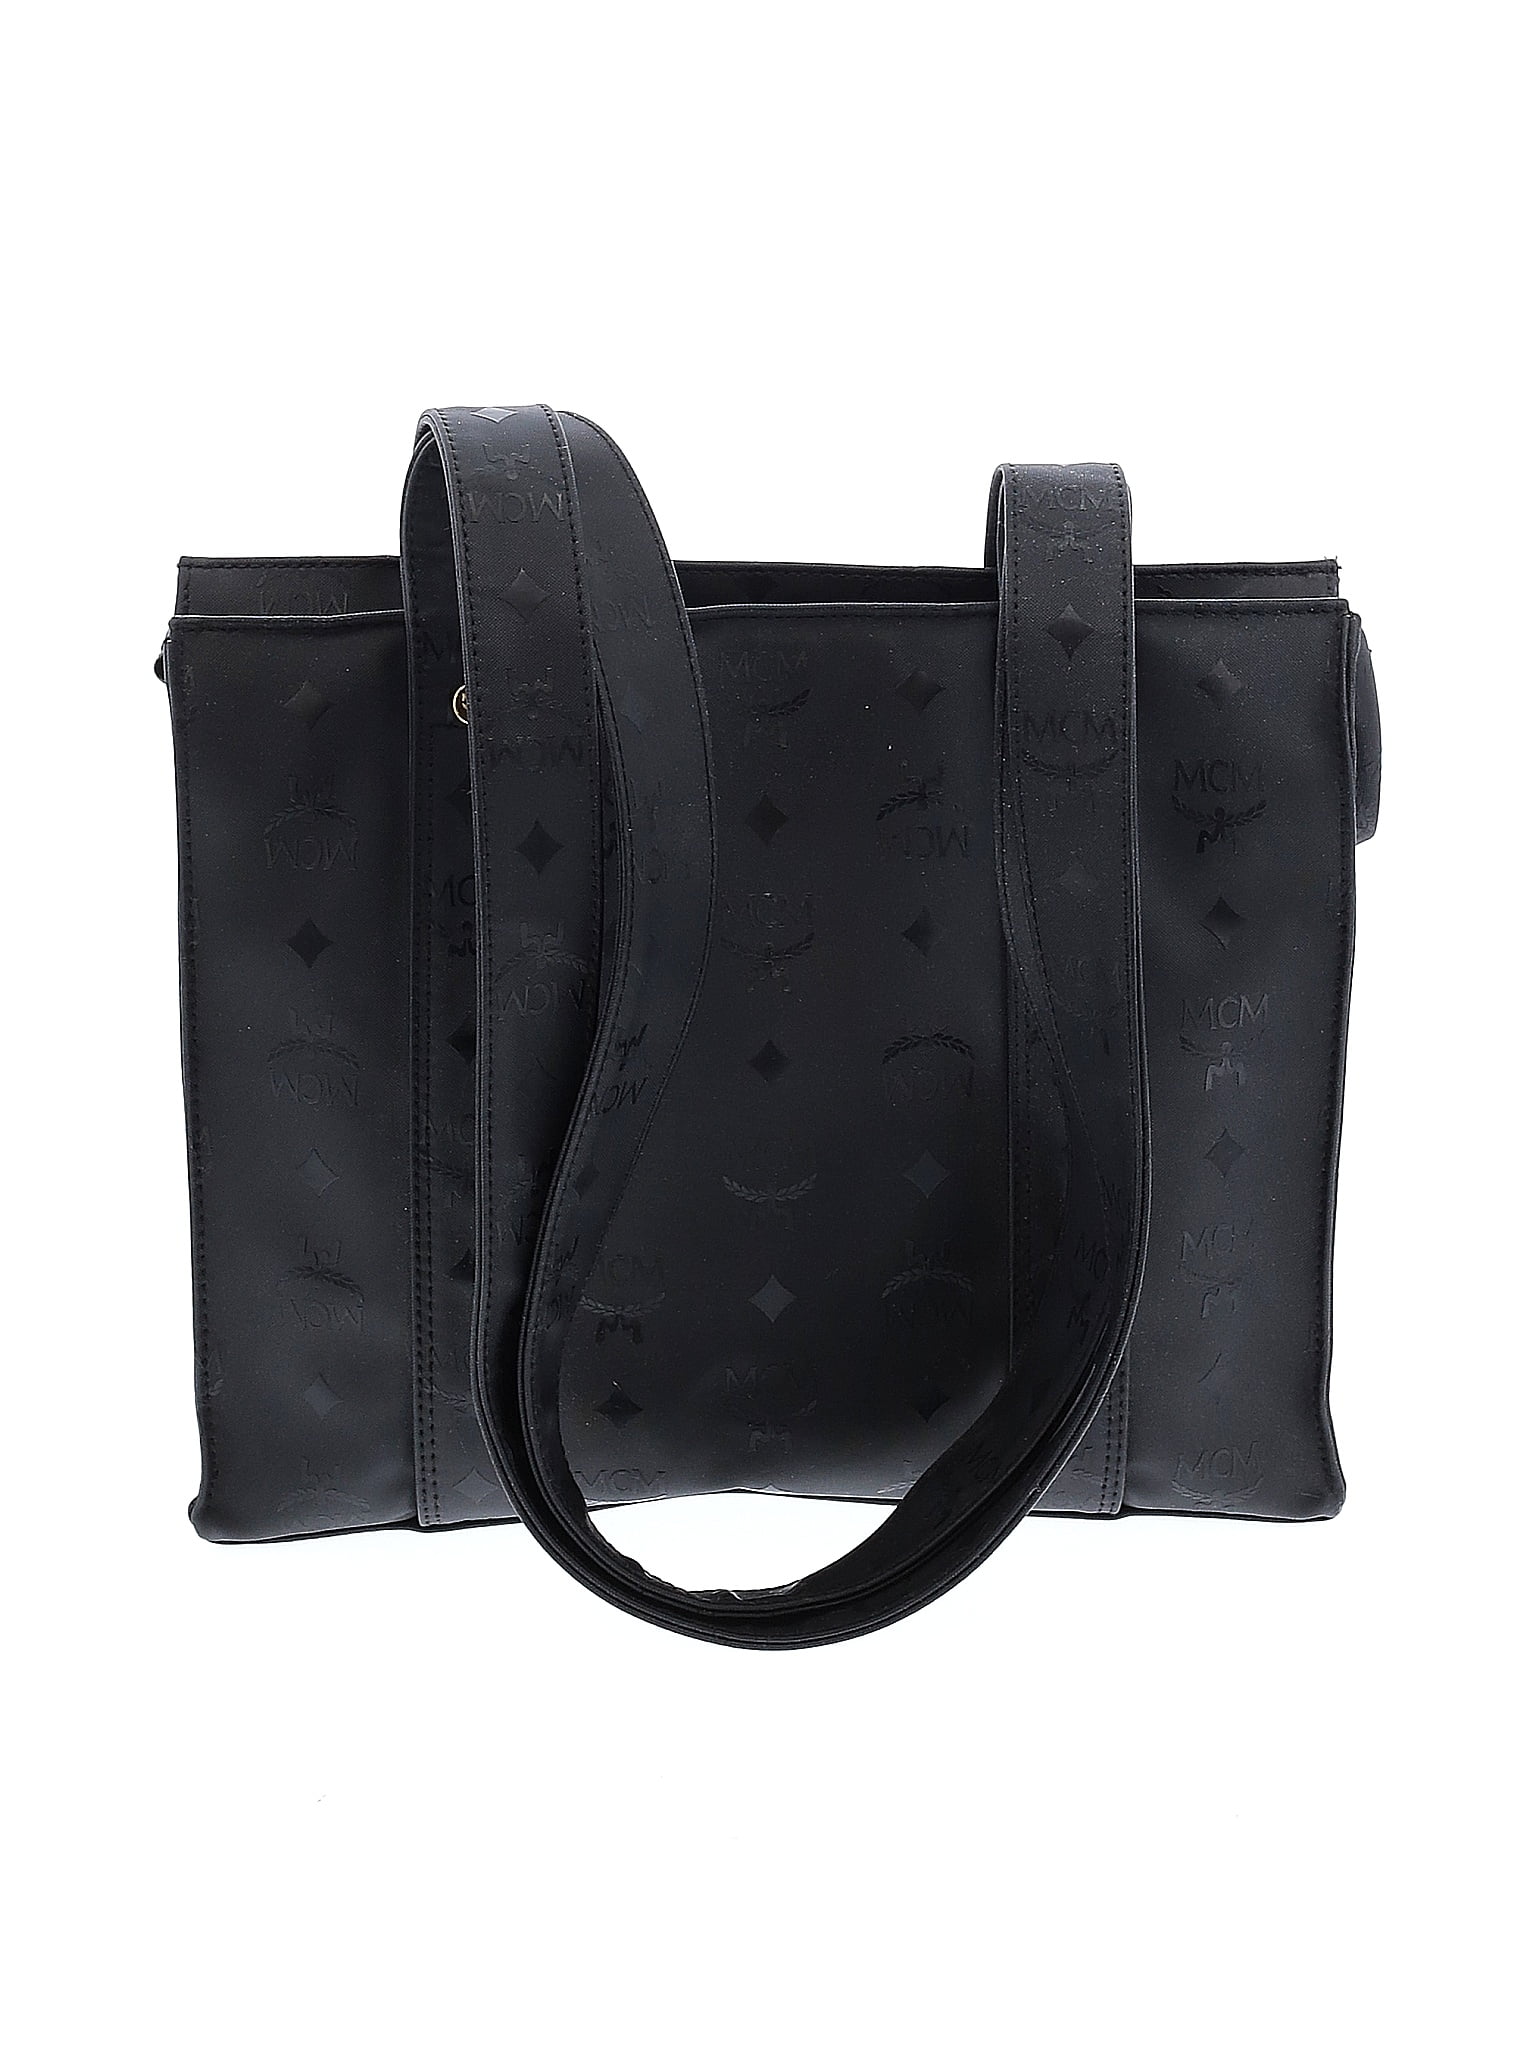 MCM Black Shoulder Bag One Size - 80% off